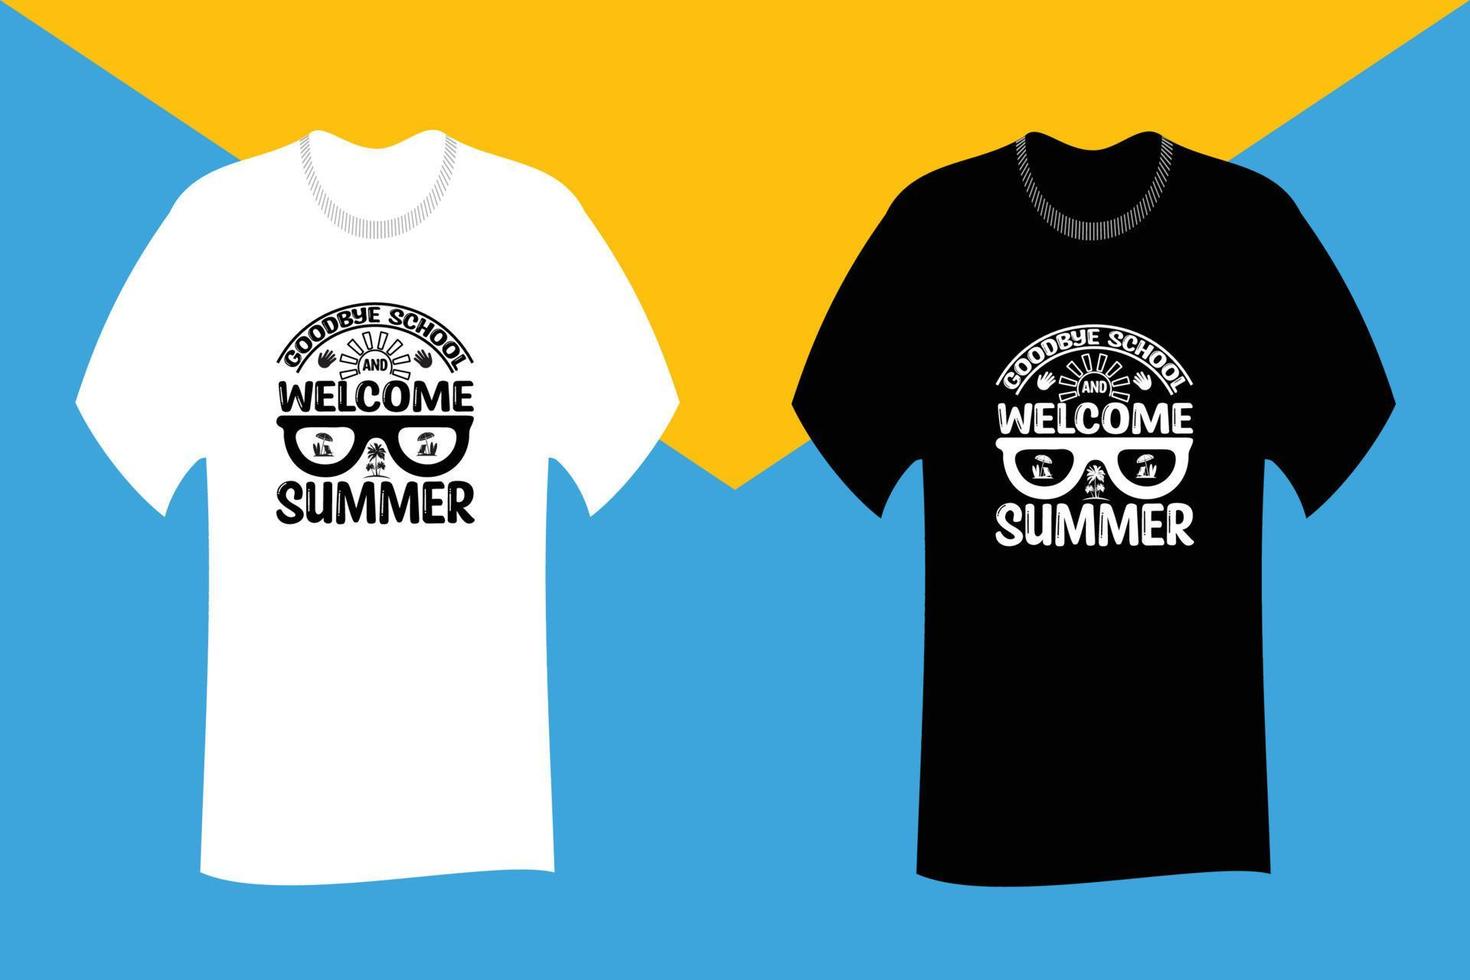 vaarwel school en welkom zomer t-shirtontwerp vector